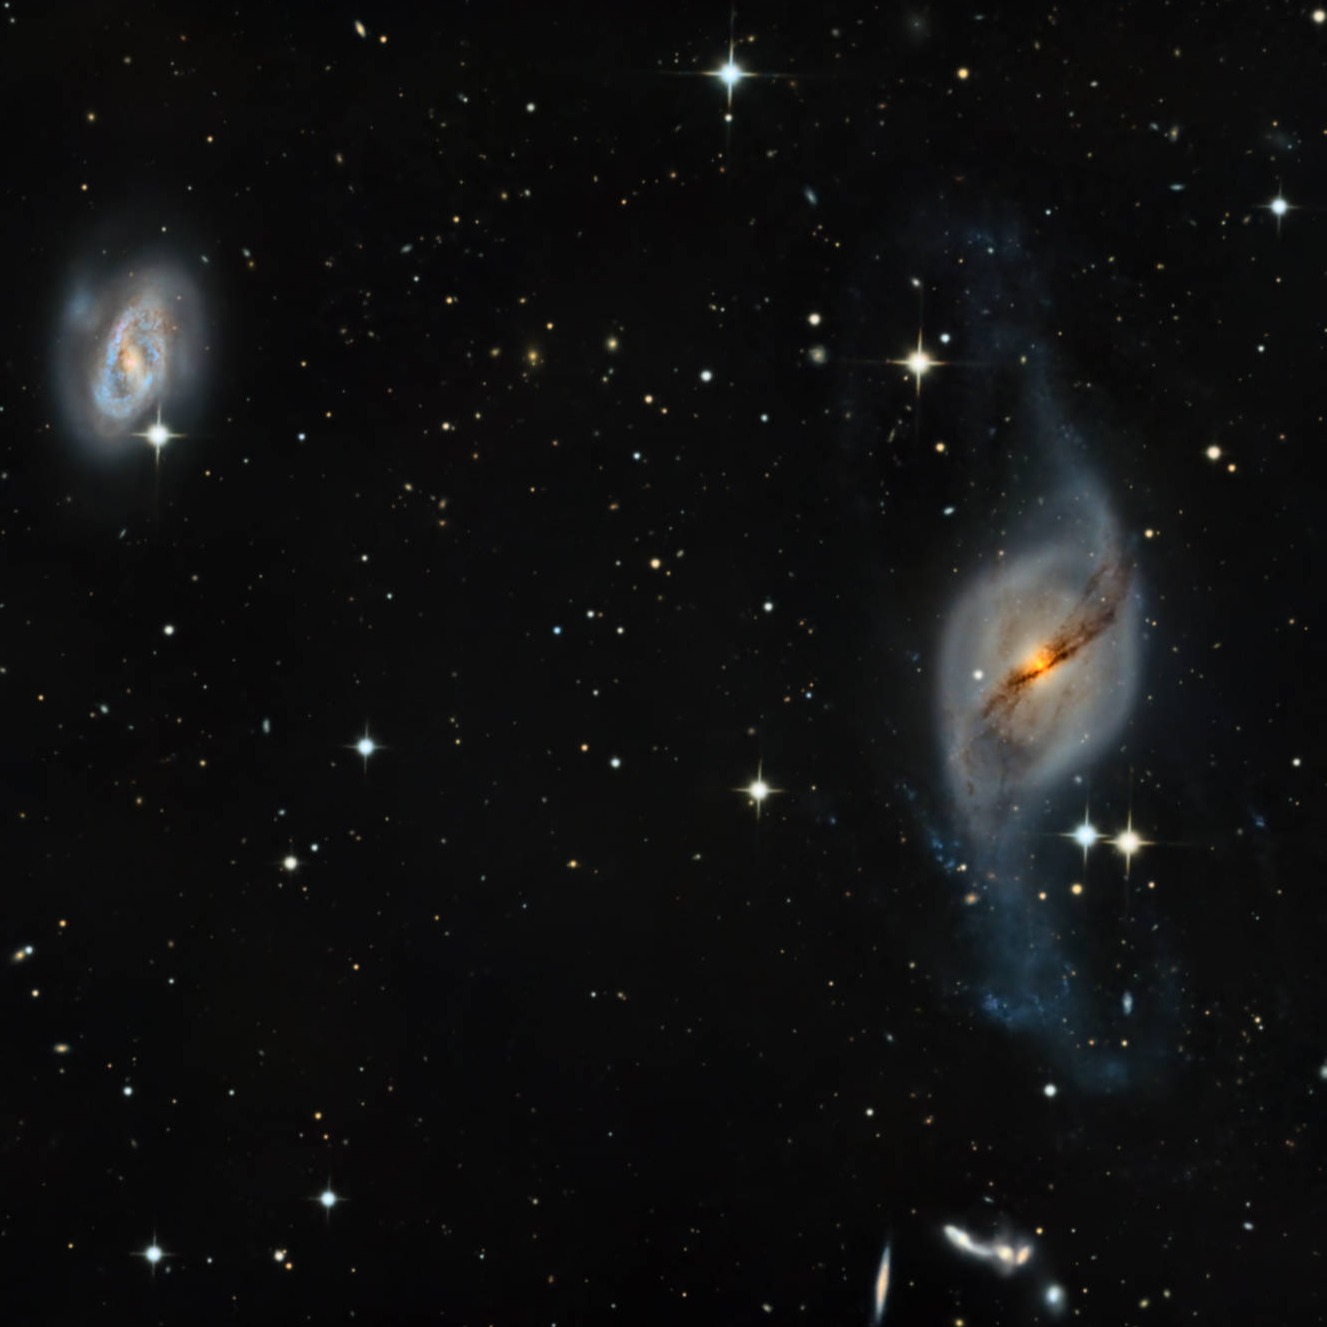 NGC 3718/29